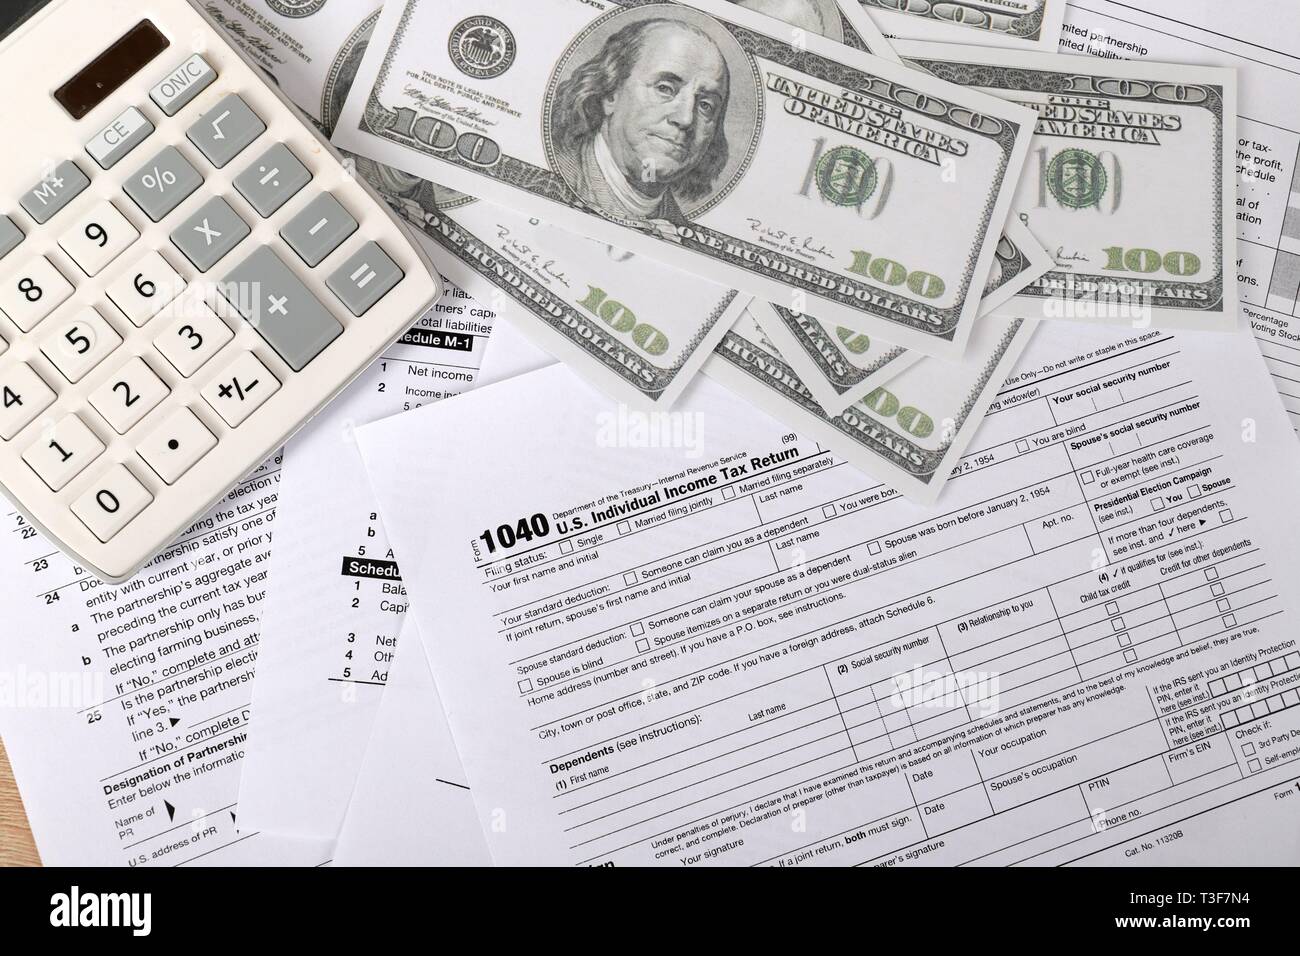 1040 forma fiscale - i singoli redditi forma 1040 si trova nei pressi di centinaia di fatture del dollaro e la calcolatrice su un tavolo Foto Stock